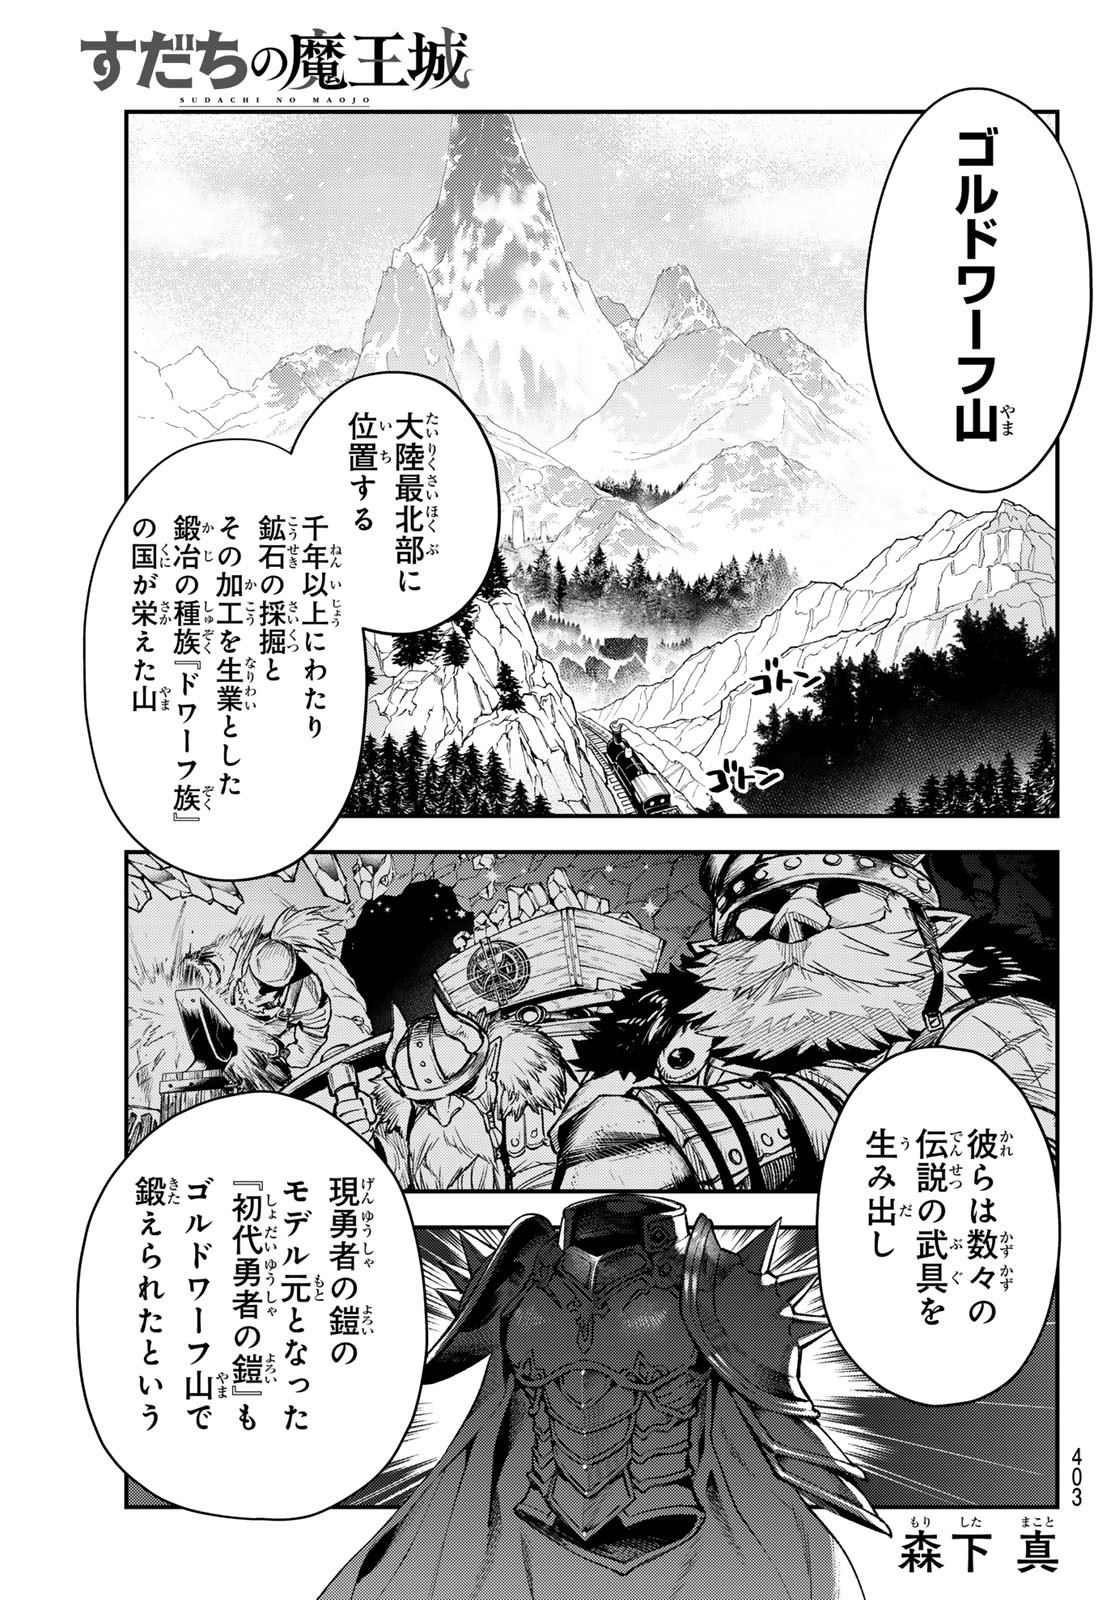 Sudachi no Maoujou - Chapter 28 - Page 1